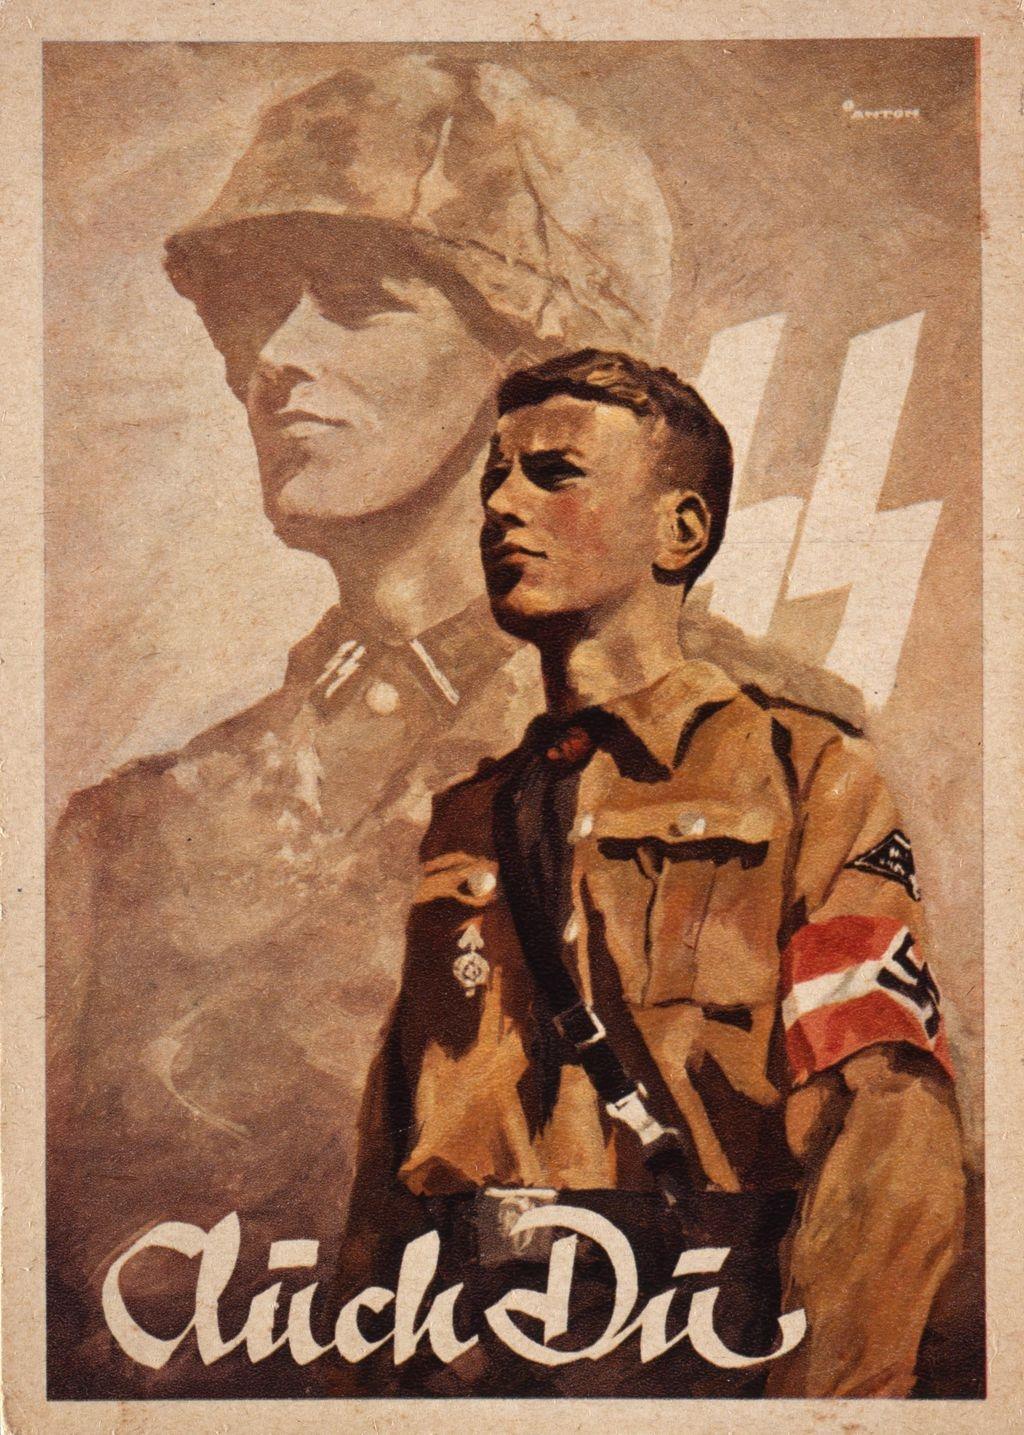 Προπαγανδιστική καρτ ποστάλ για την ναζιστική νεολαία 1943 Πηγή εικόνας: